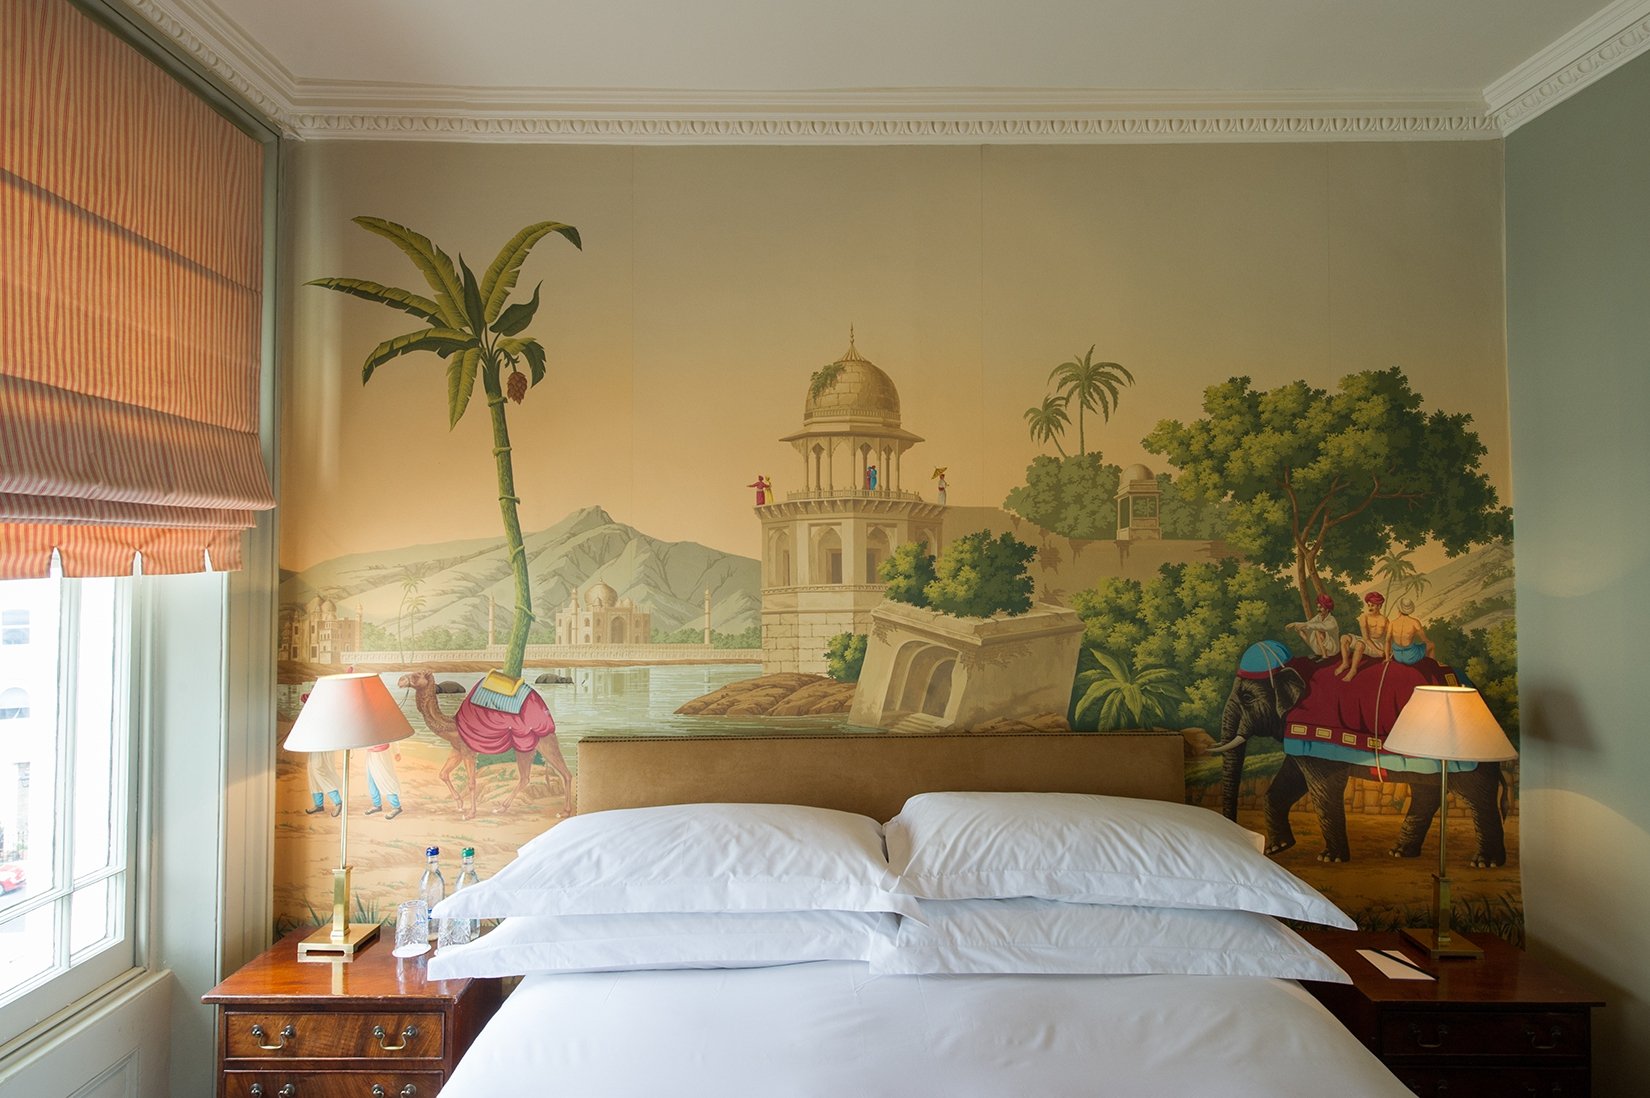 Papiers Peints Panoramiques - Hotel Best Wallpaper Design , HD Wallpaper & Backgrounds